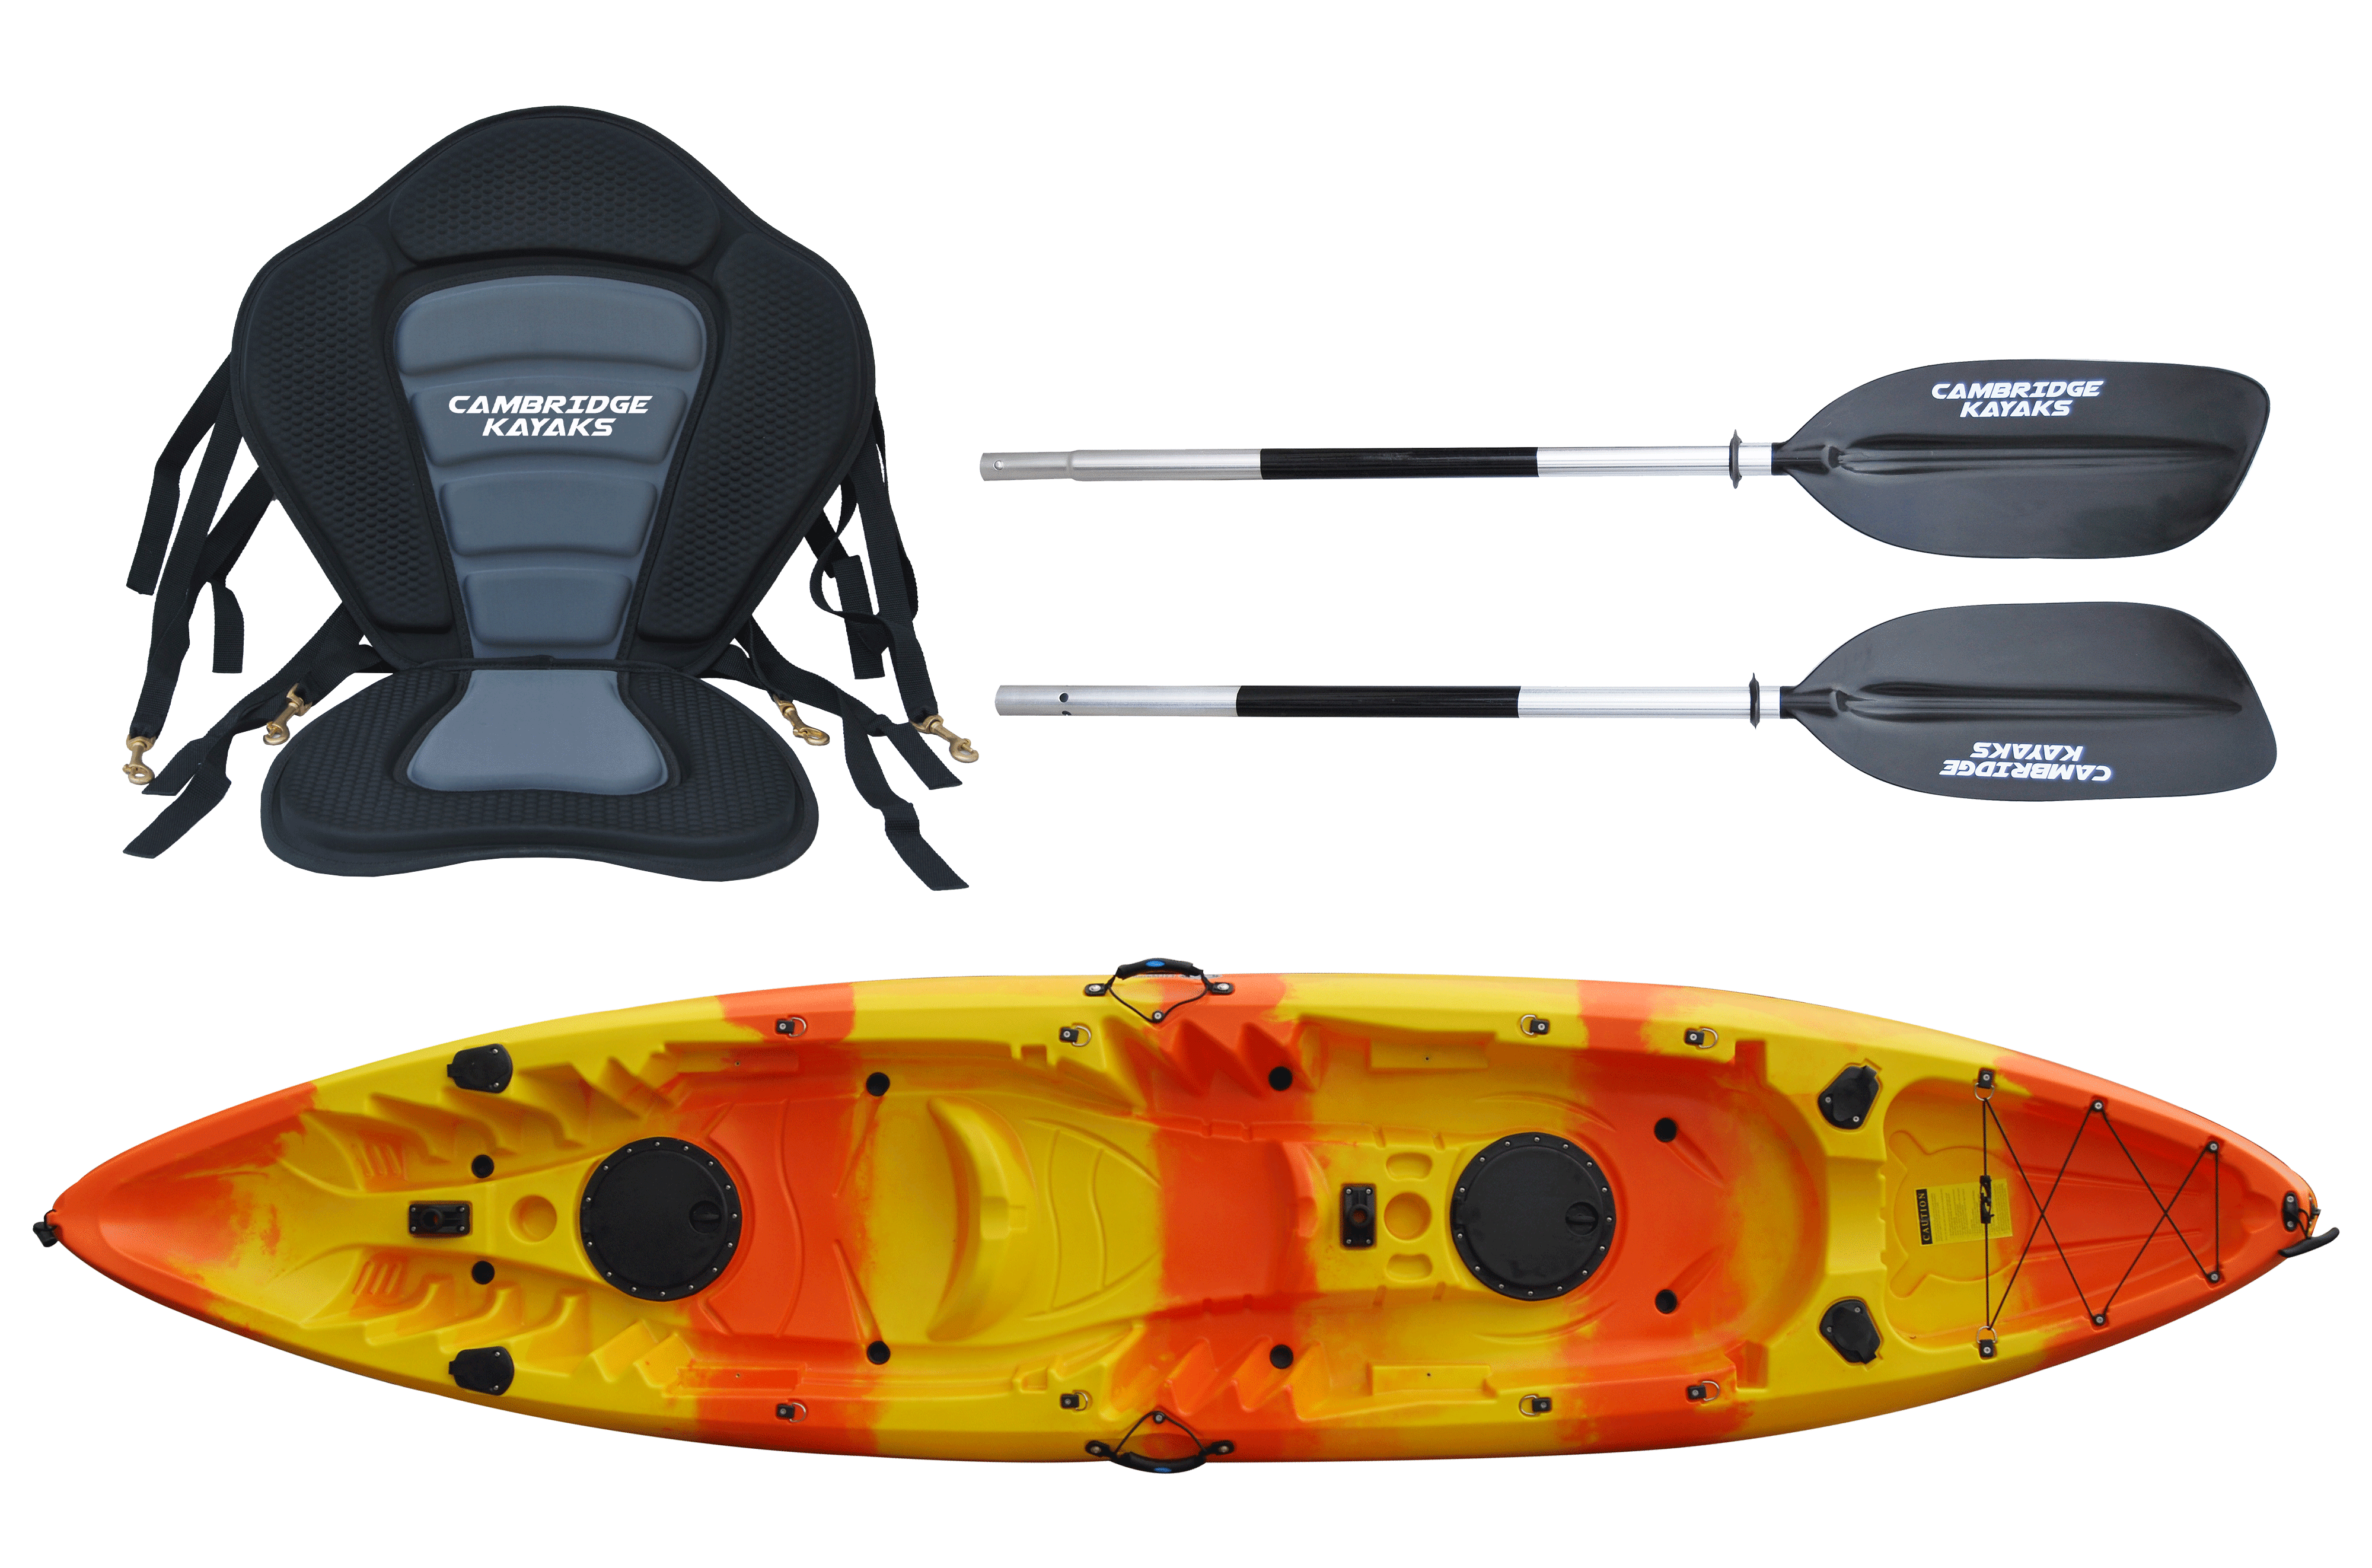 Instalación sonda de pesca en kayak Barracuda. ¡Cómo se pone el